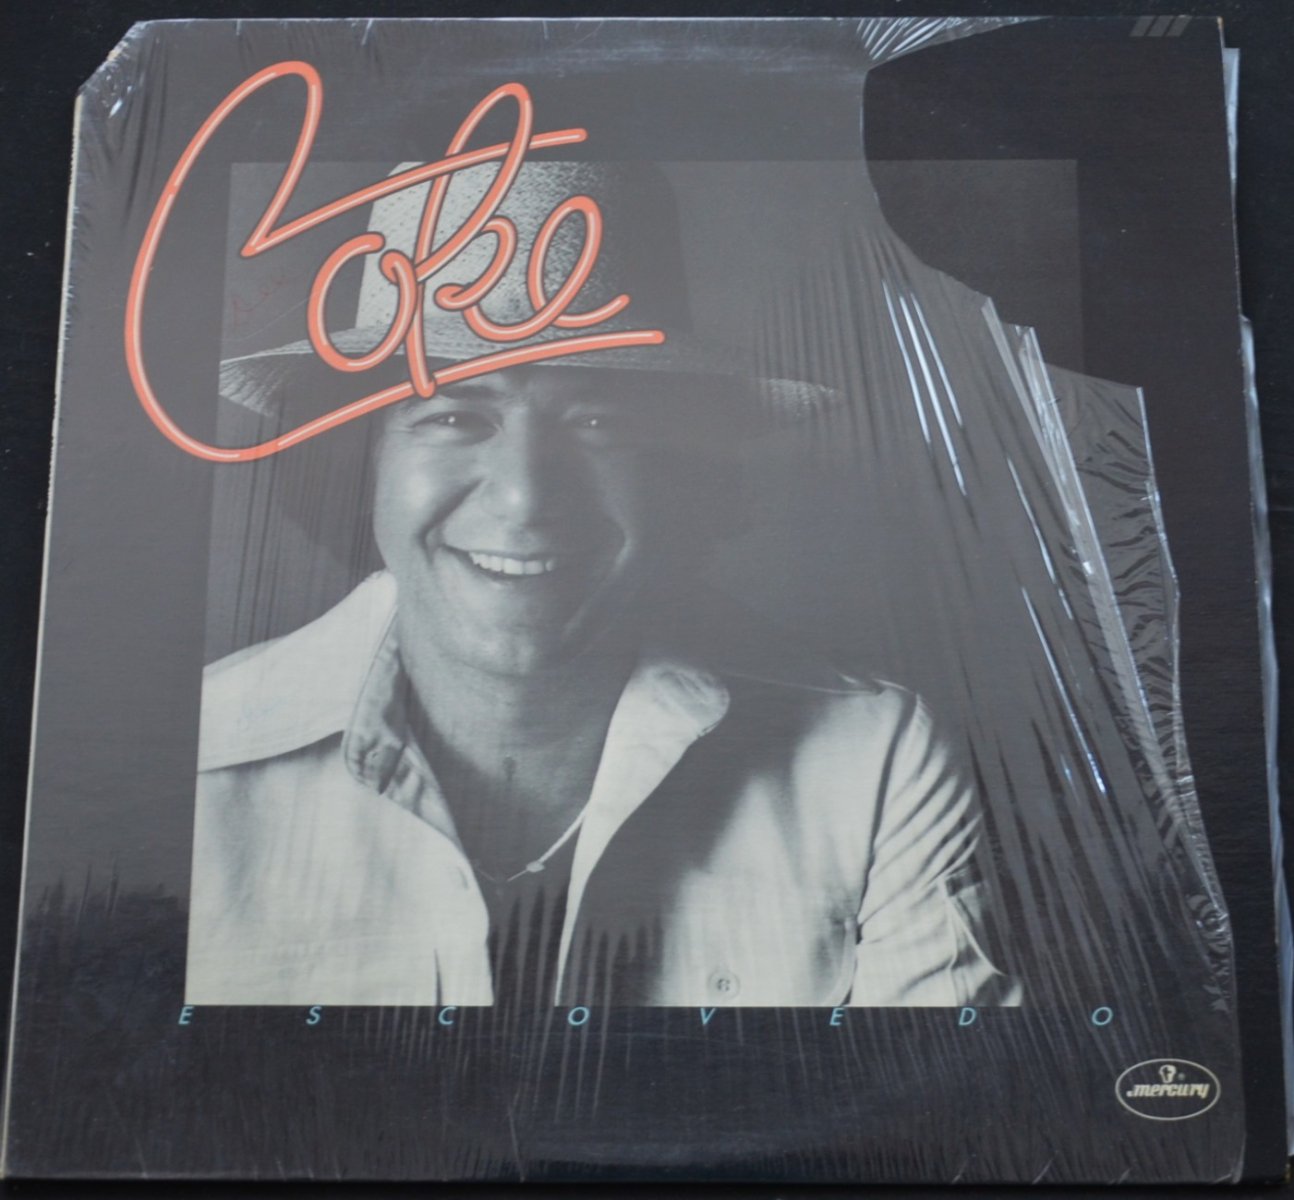 COKE ESCOVEDO / COKE (LP)